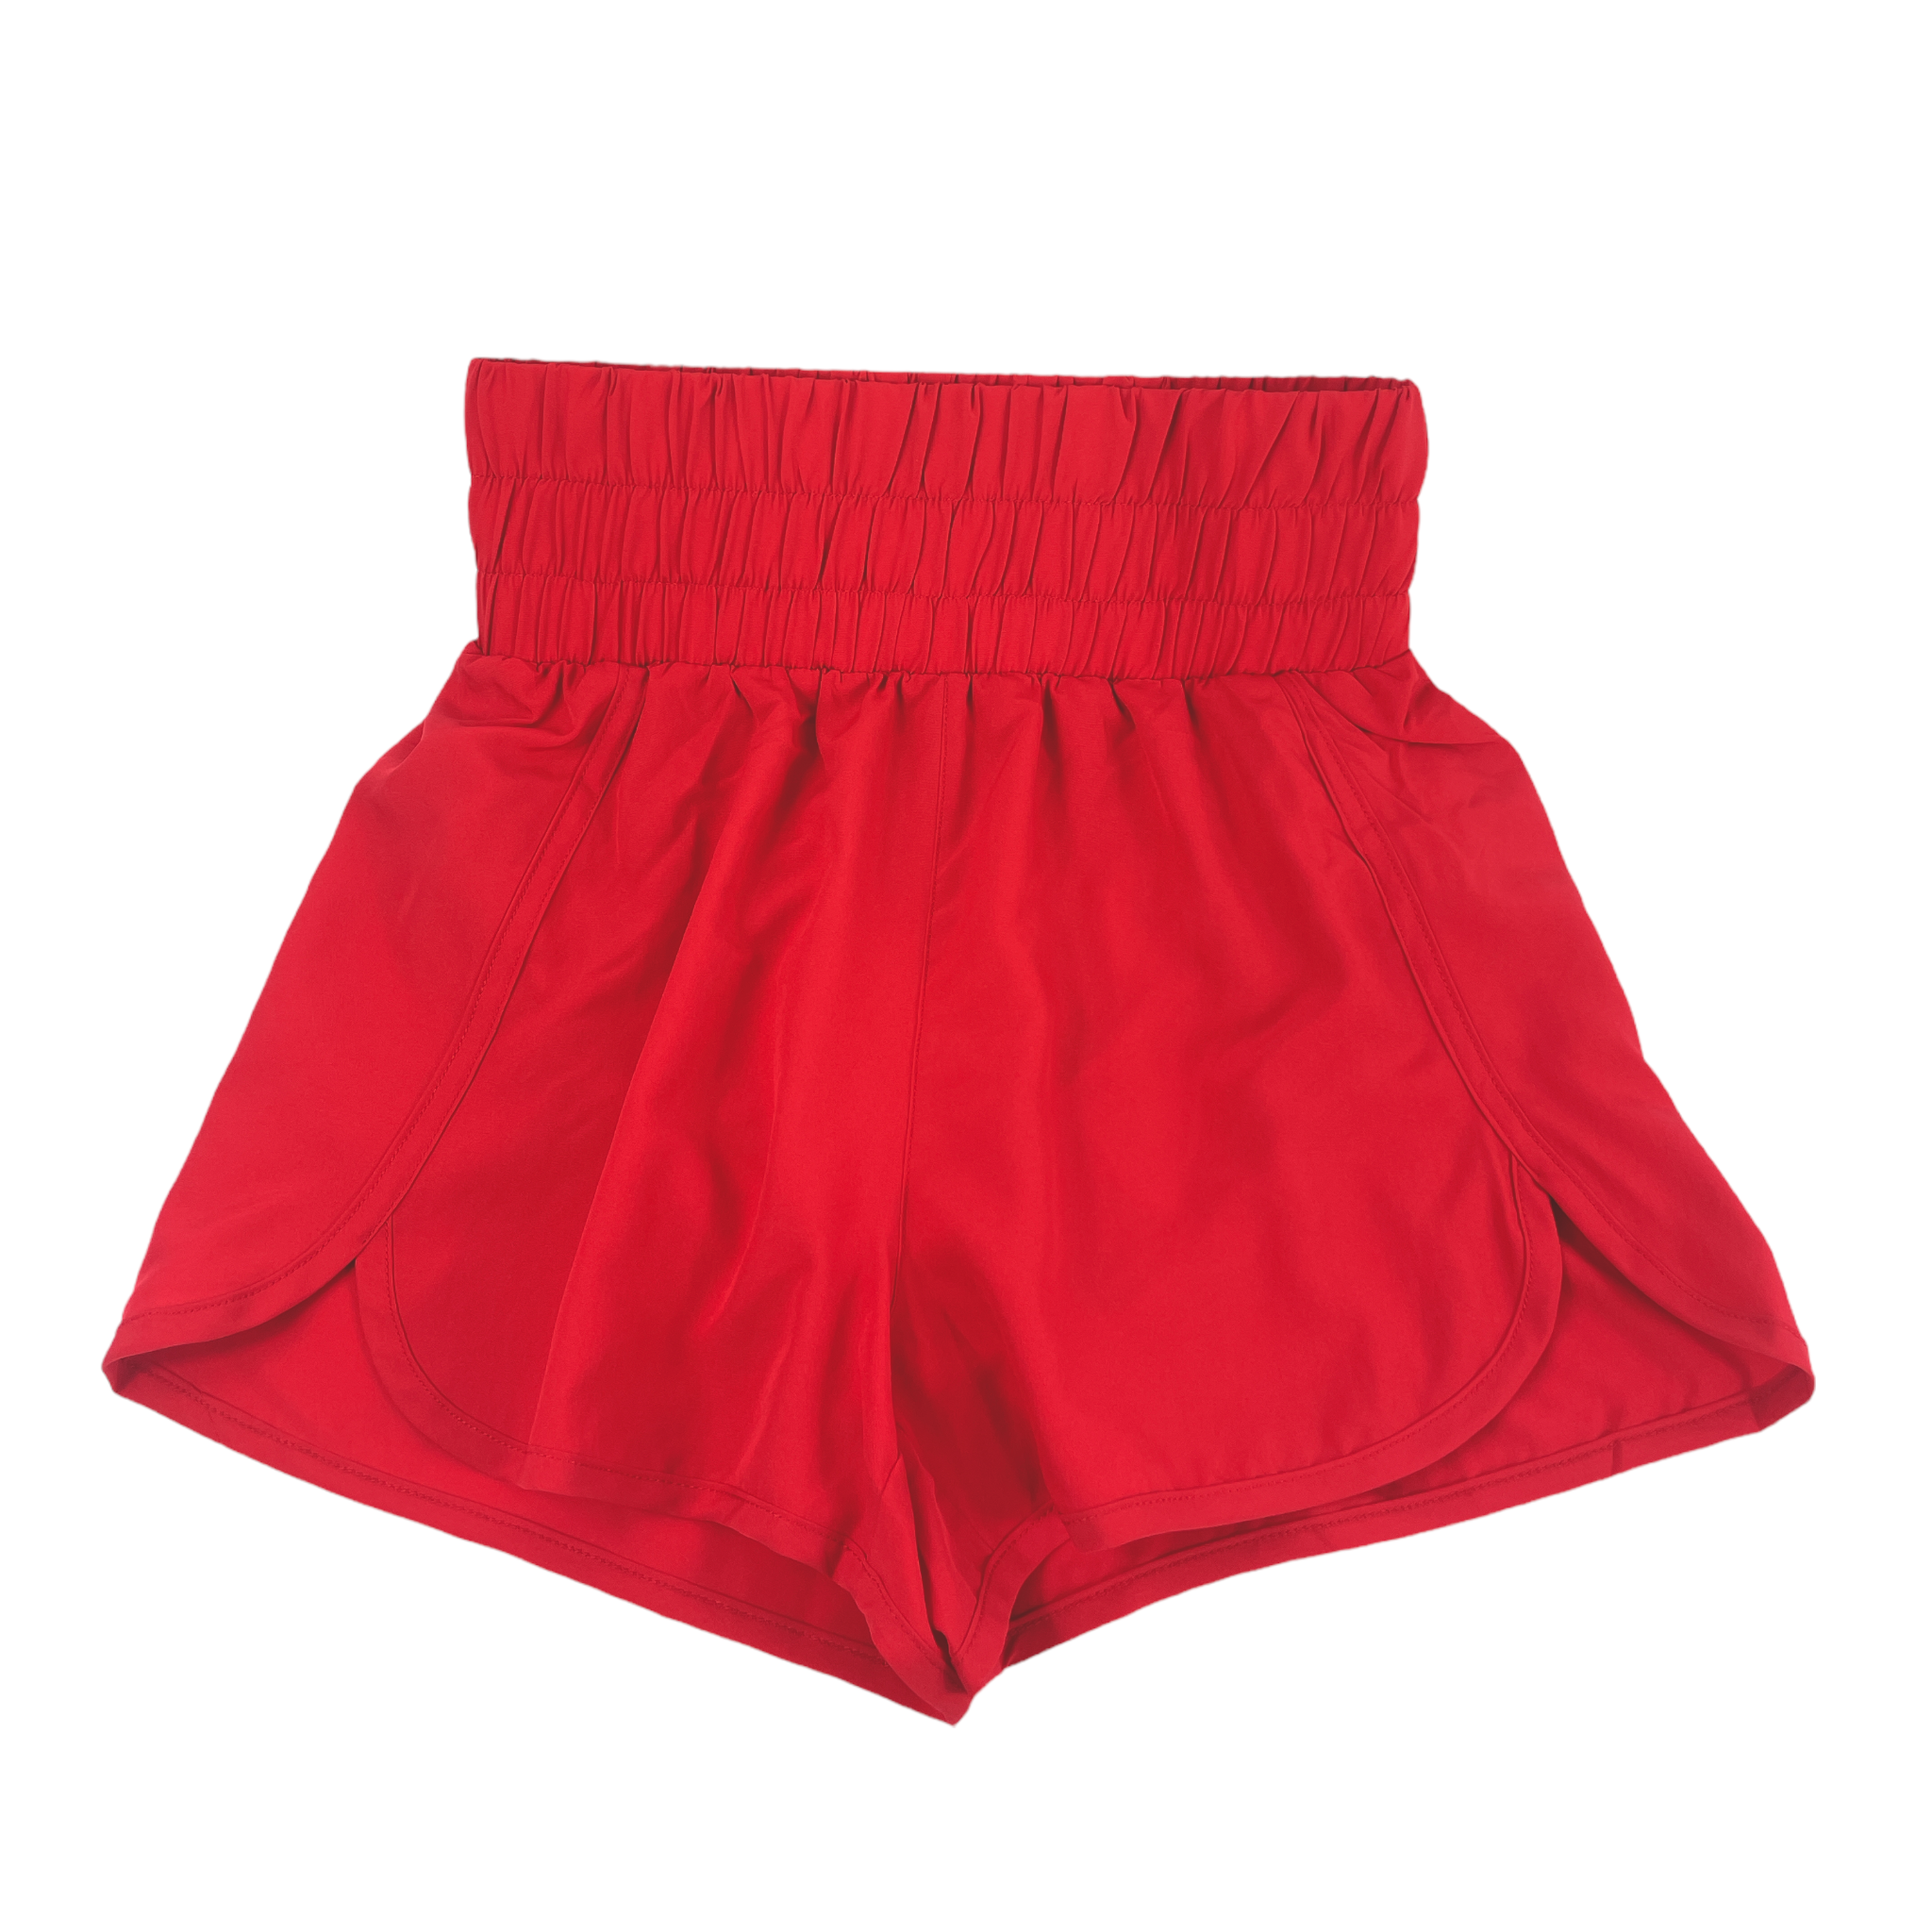 SH-0524 Elastic Waist Shorts Red